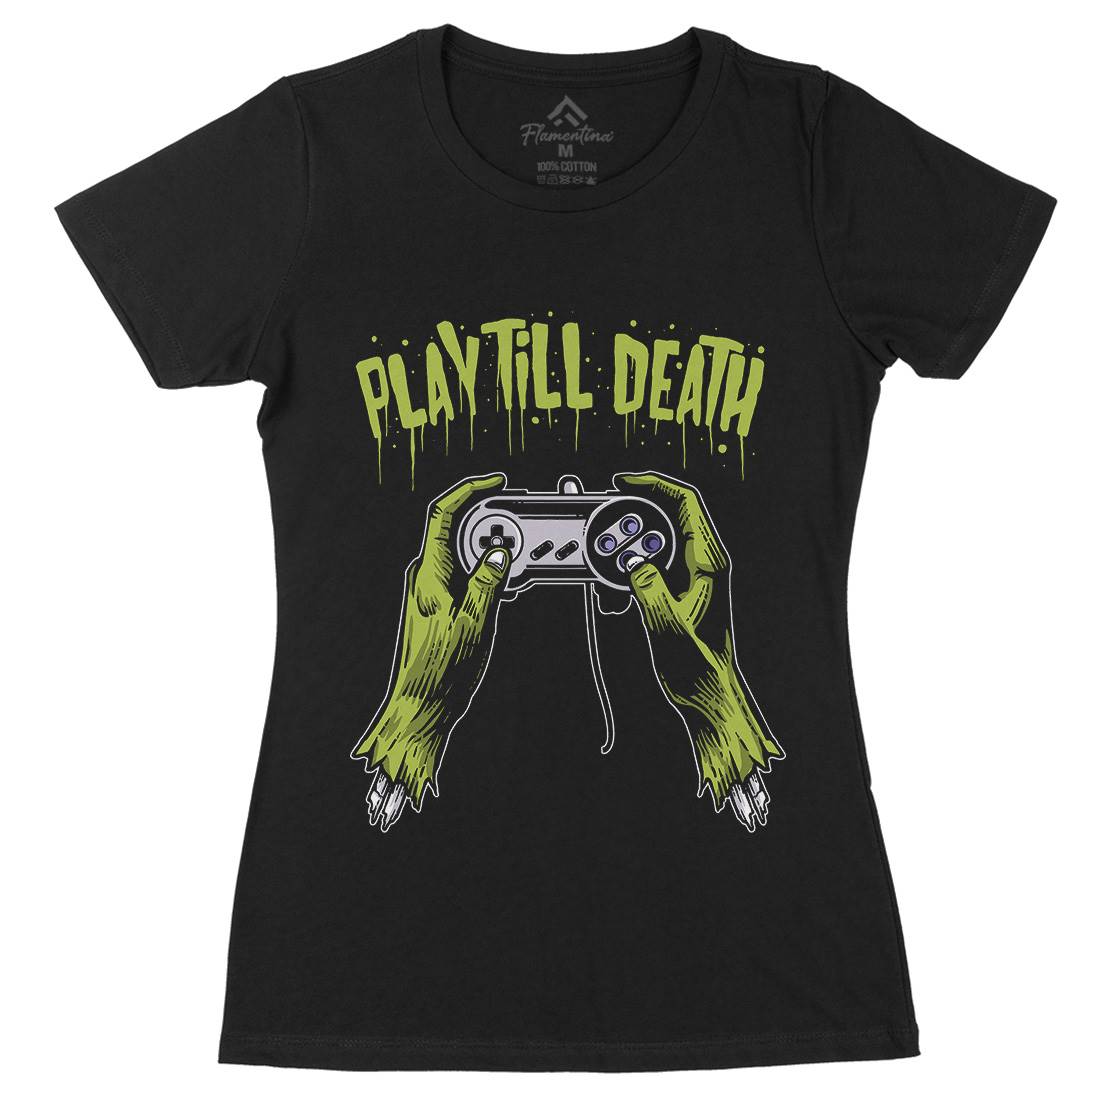 Play Till Death Womens Organic Crew Neck T-Shirt Geek A561